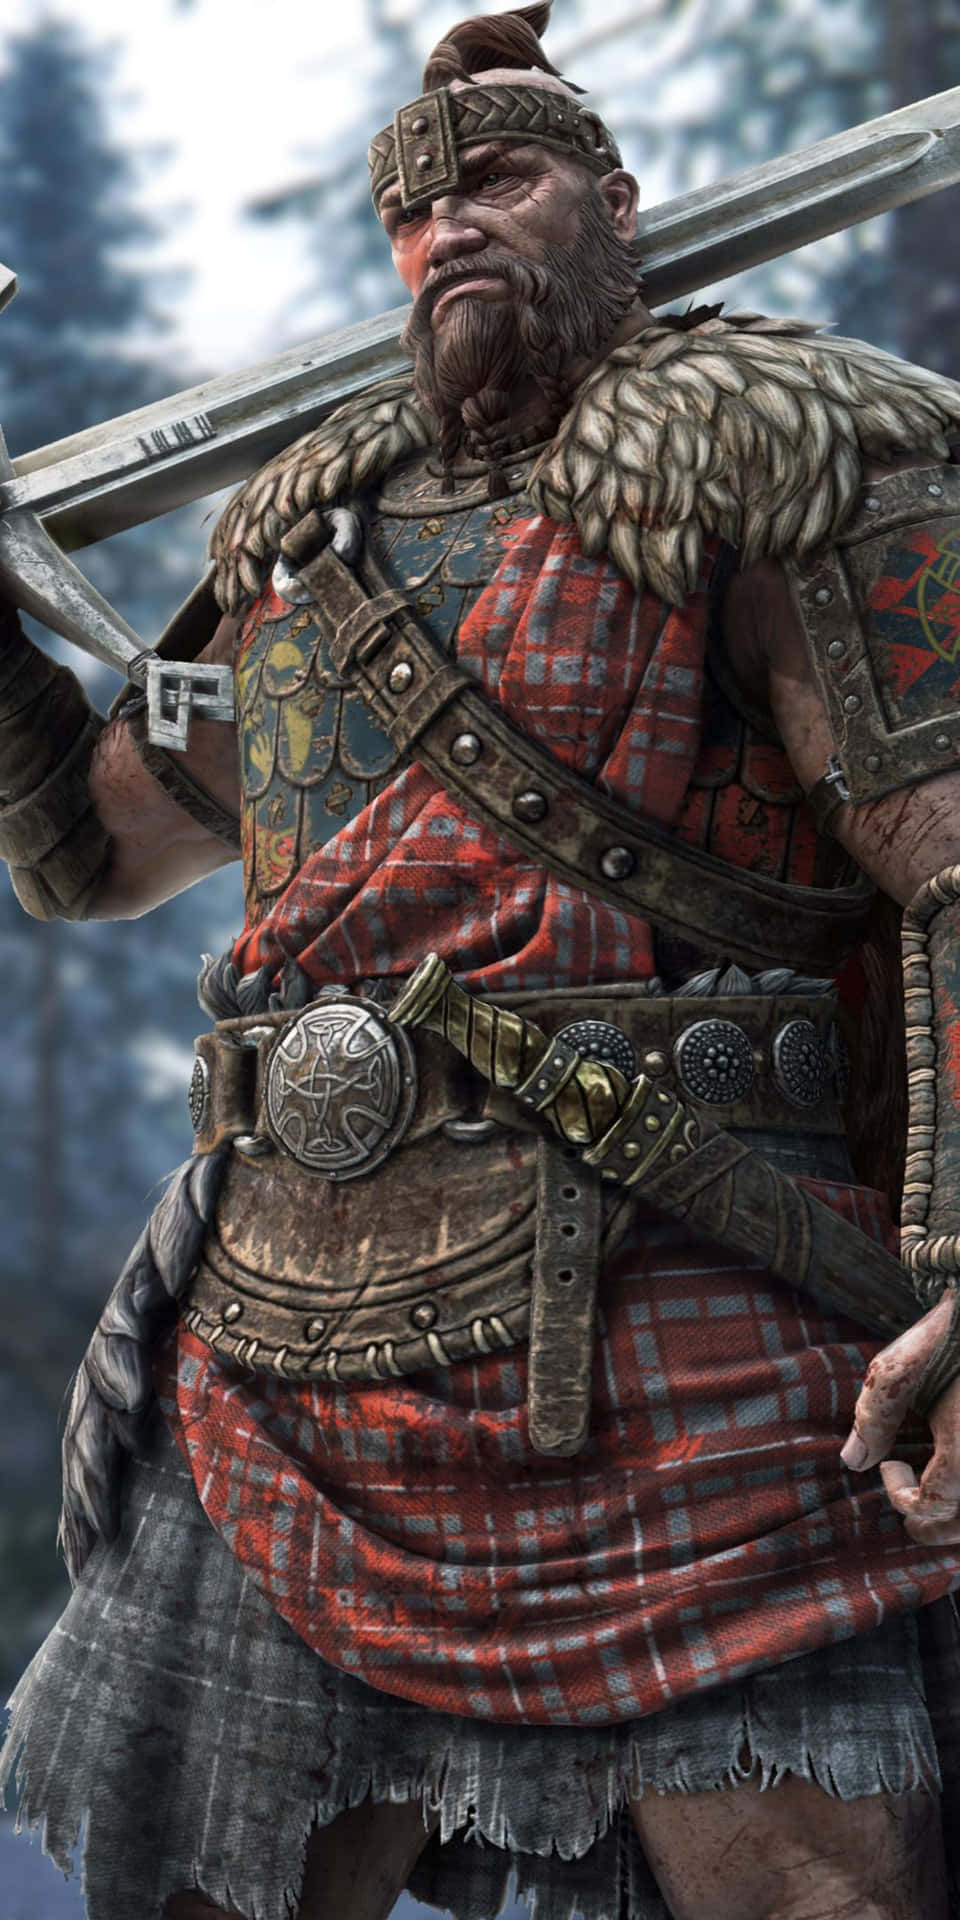 Pixel3 Hintergrund Mit Defensivem Highlander Aus For Honor